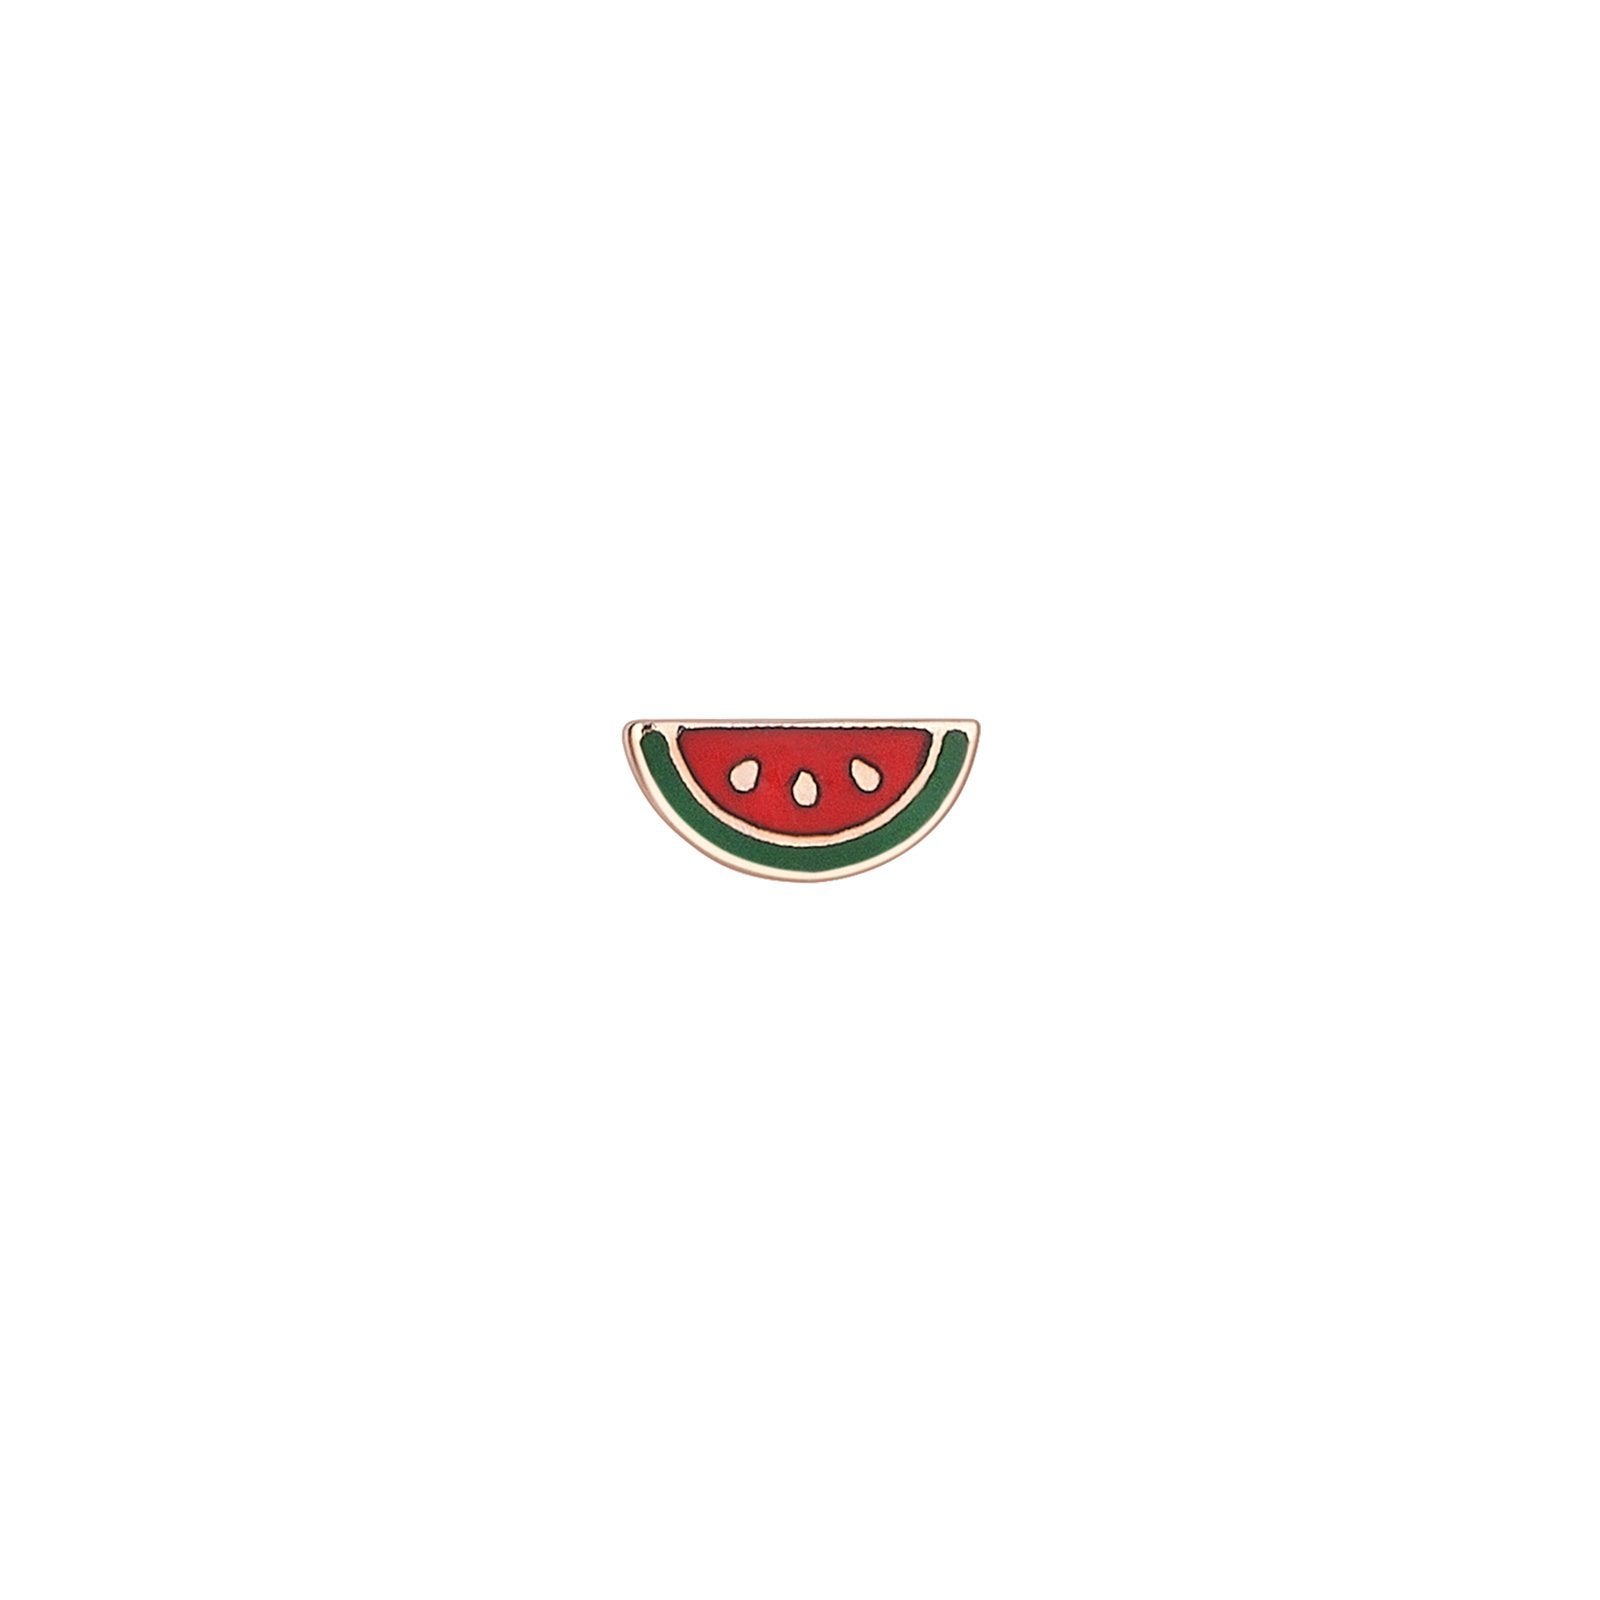 Watermelon Sabit Küpe - Kısmet by Milka Türkiye